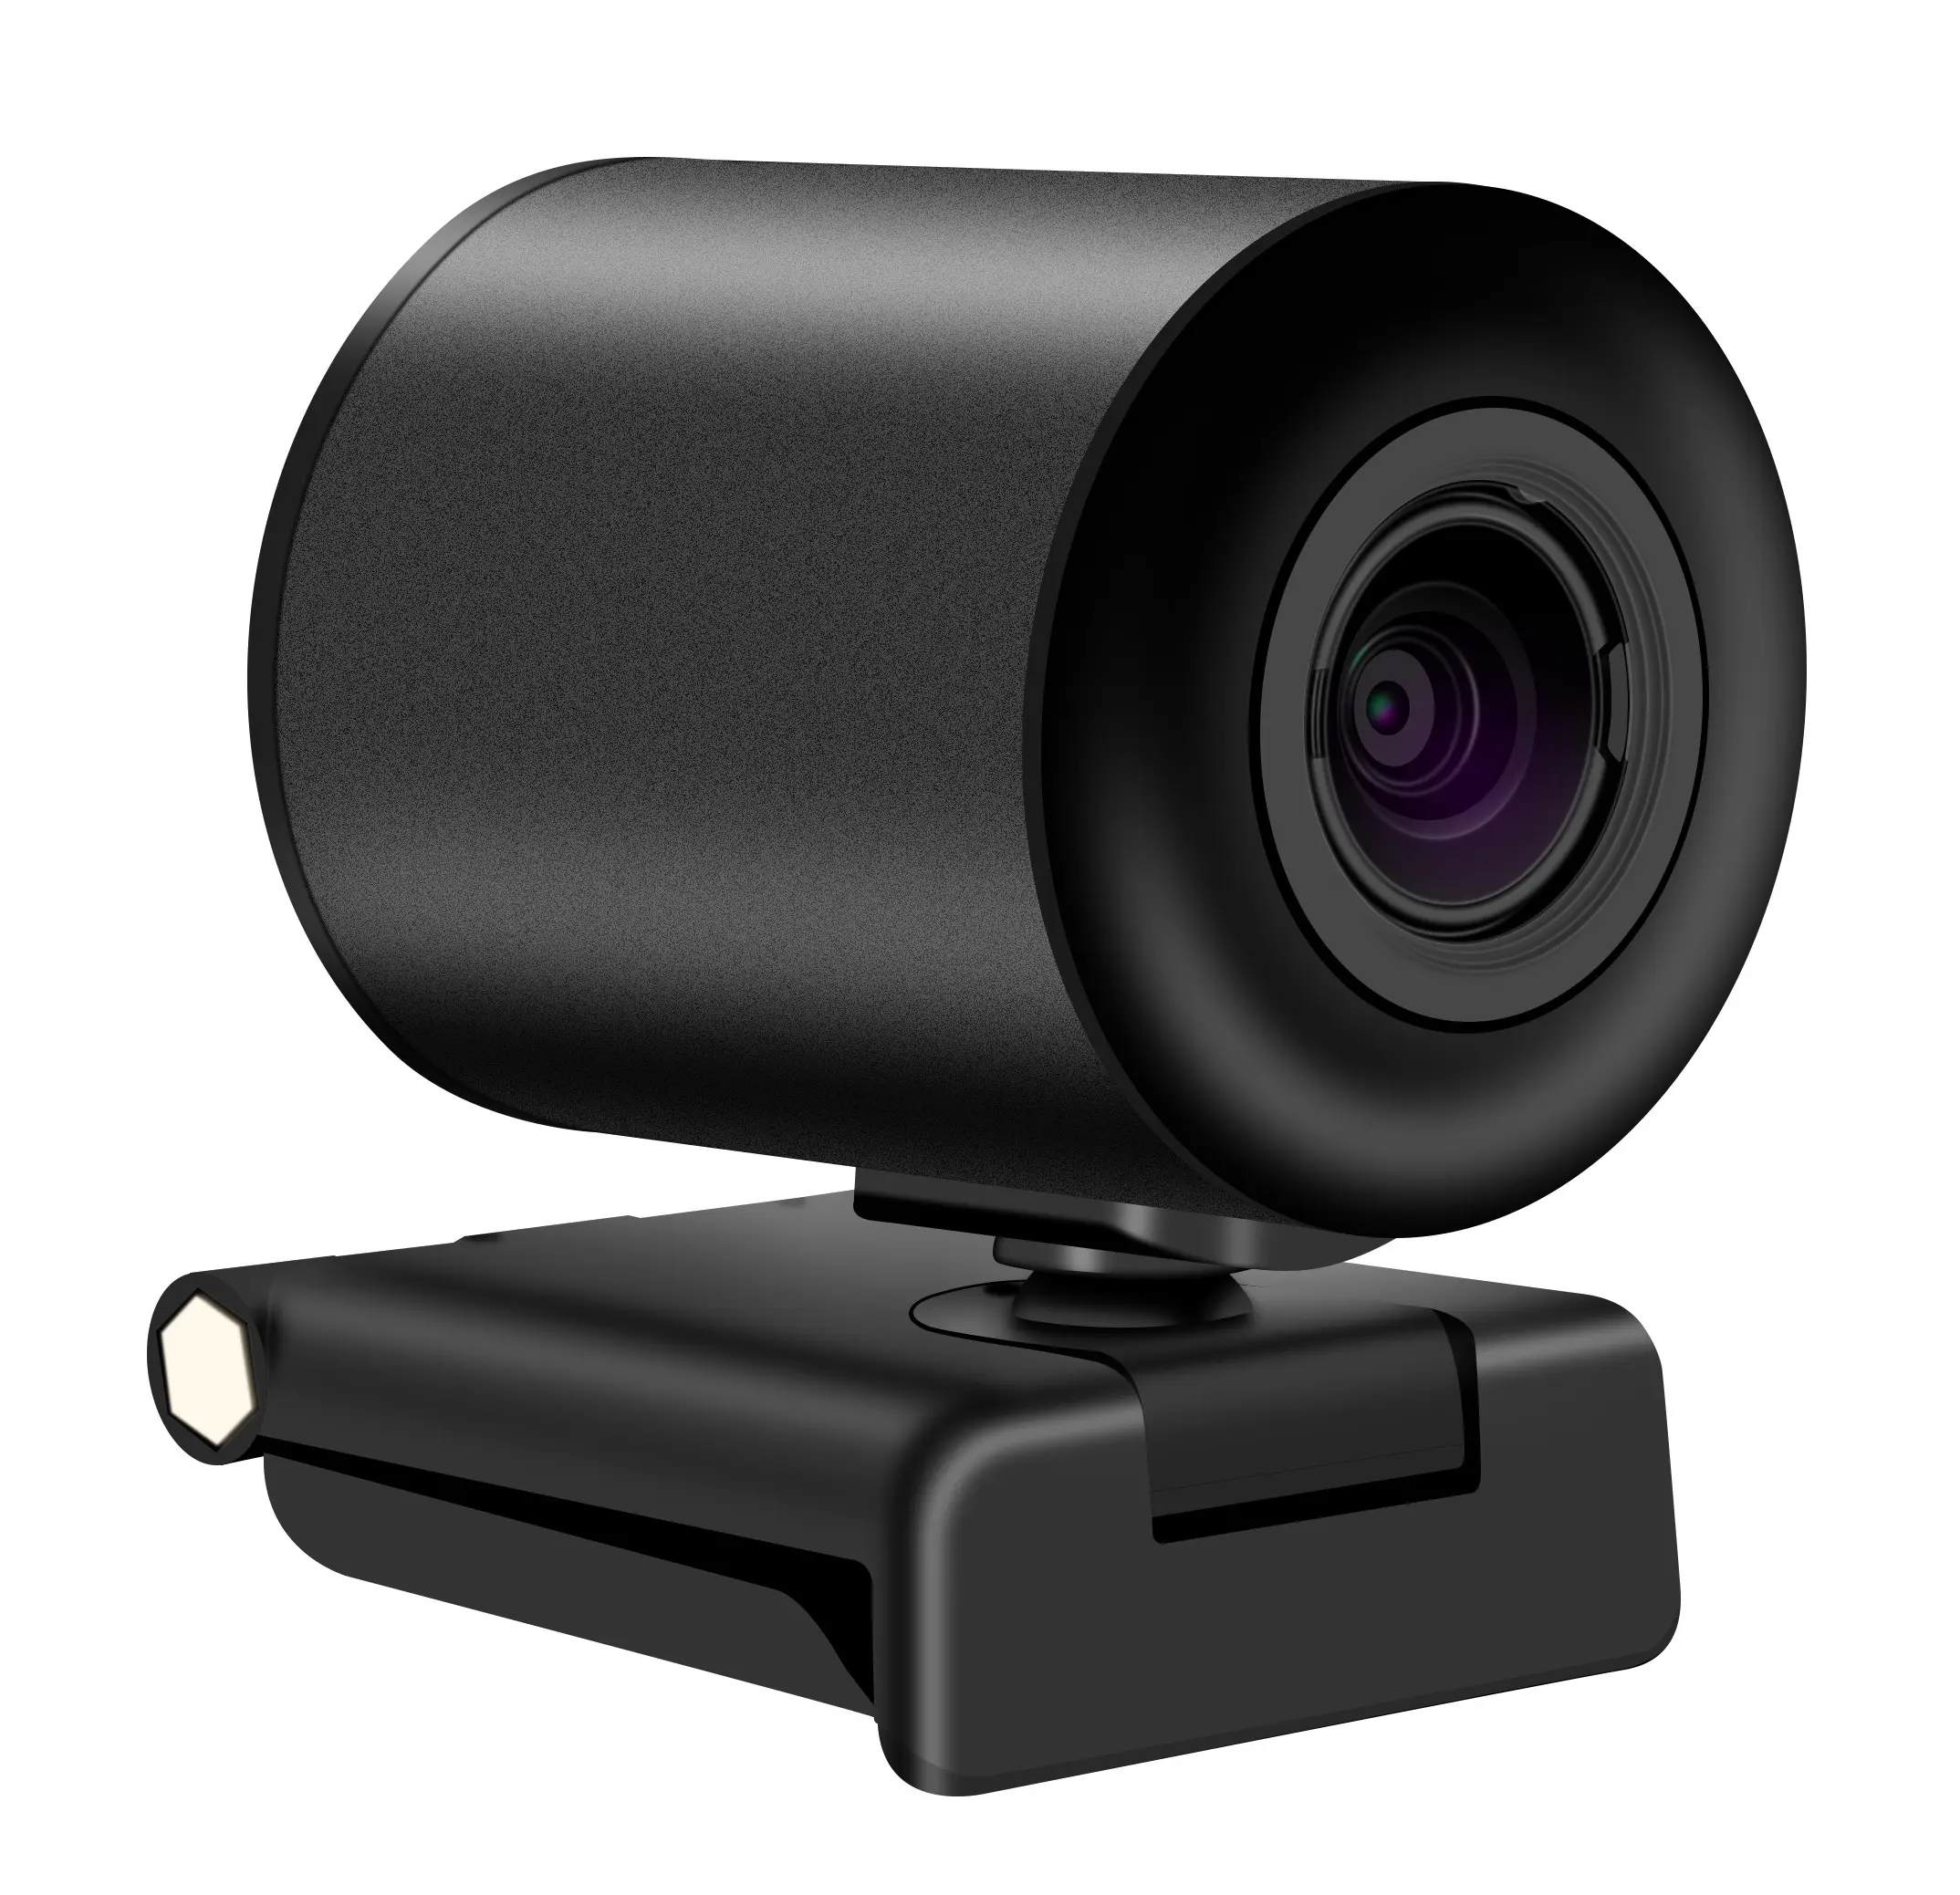 USB Computer PTZ auto focus Camera 1080P Webcam 3X Optical Zoom PTZ IP Camera ptz camera for live streaming